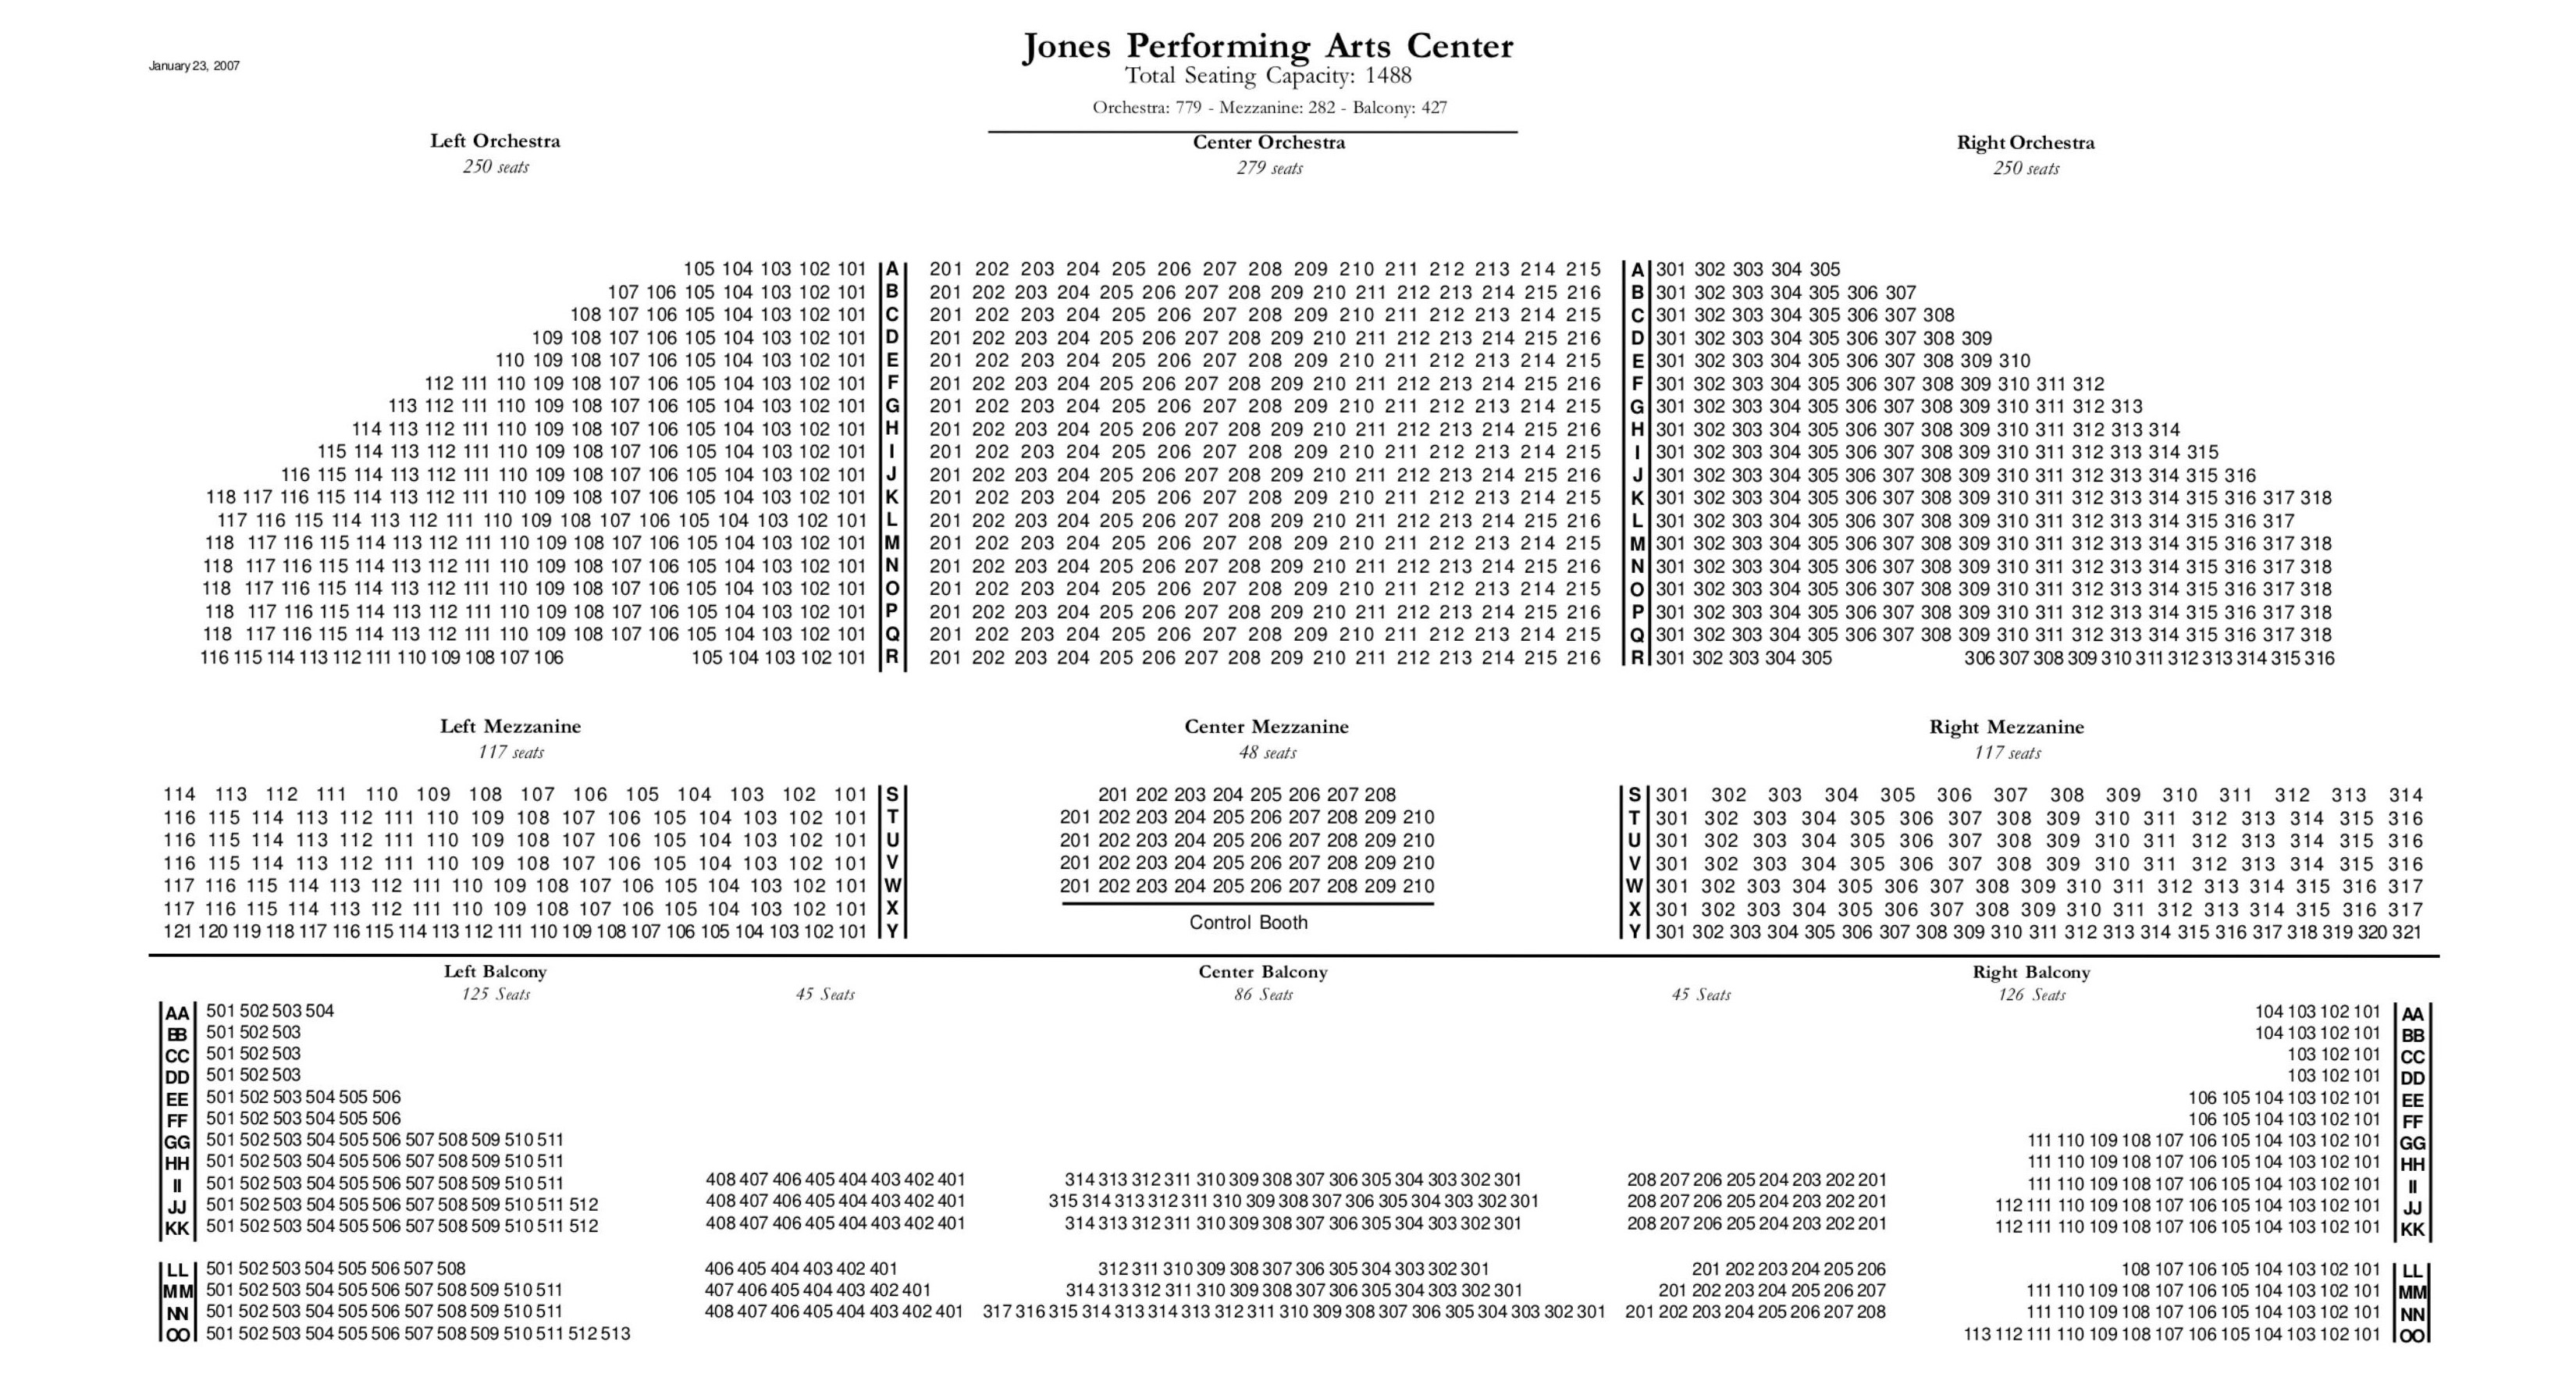 JPAC seating chart